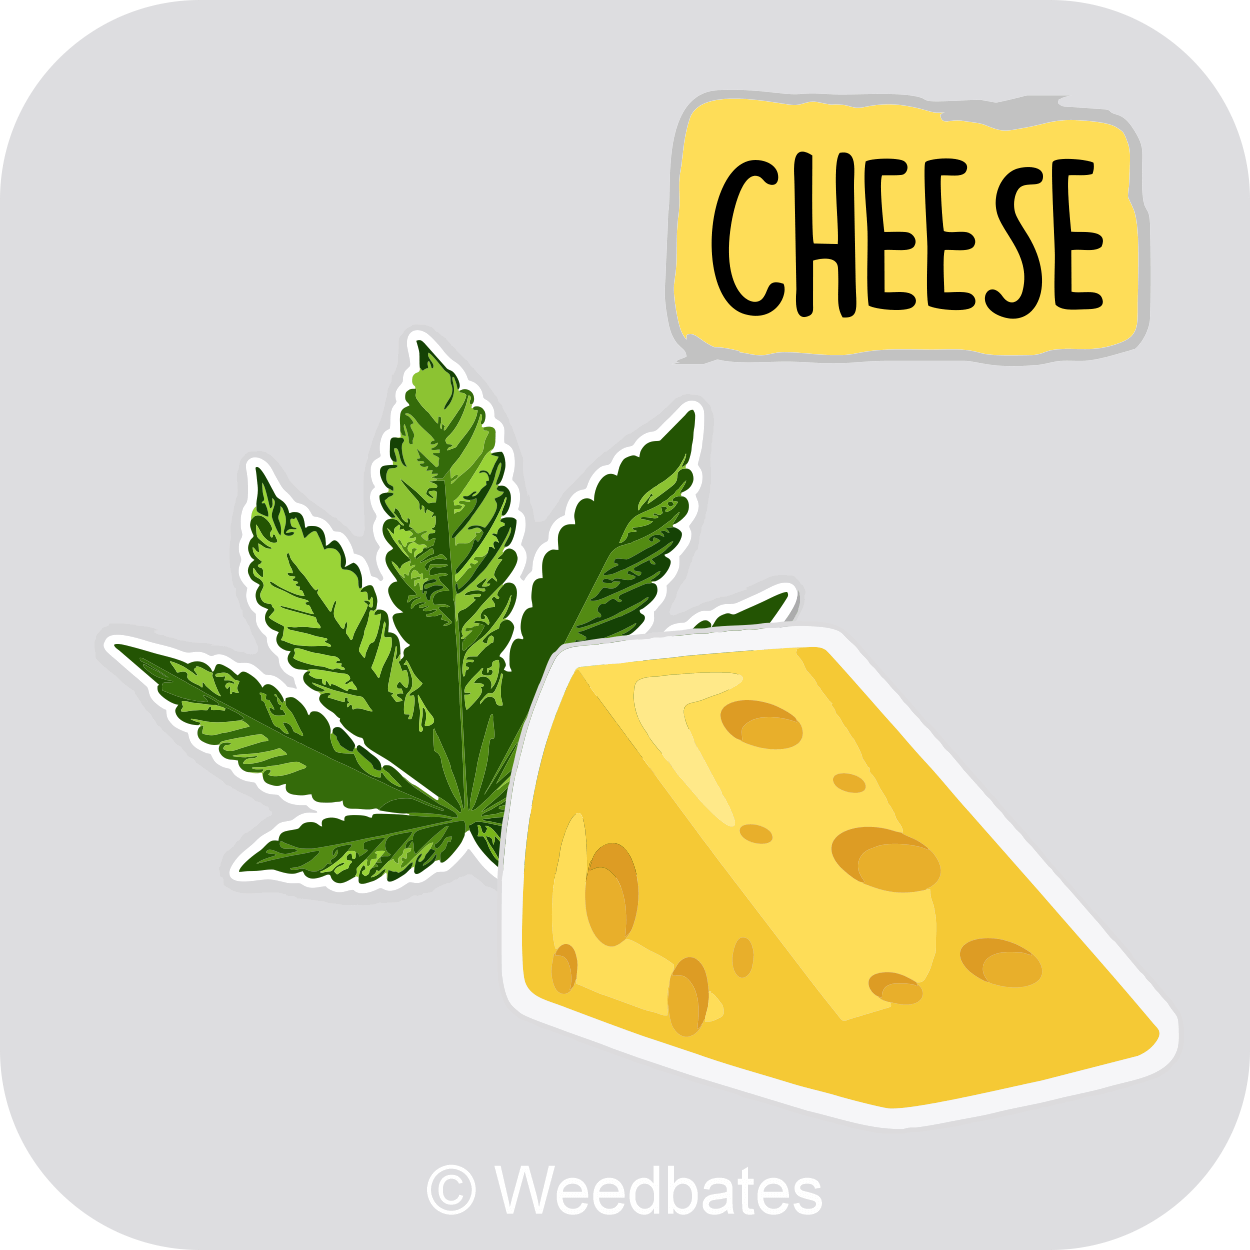 Cheese strain